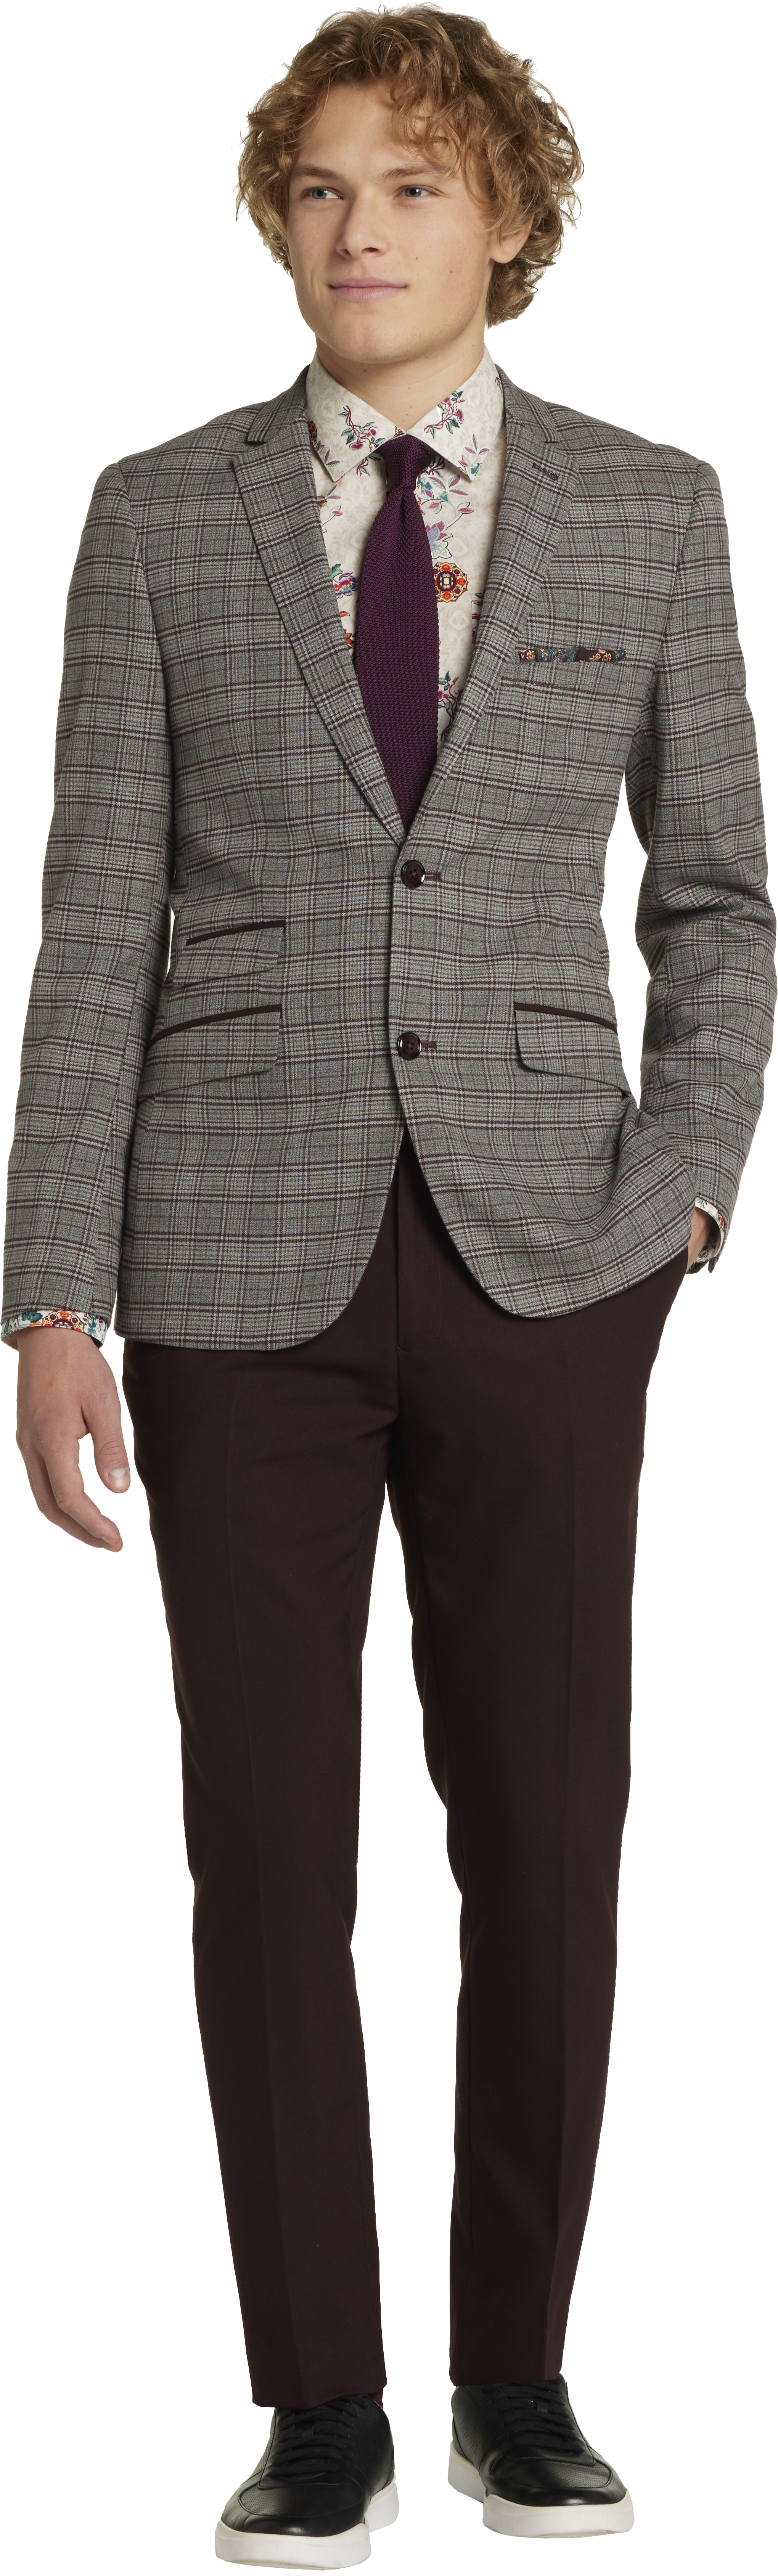 Slim Fit Check Suit Separates Jacket